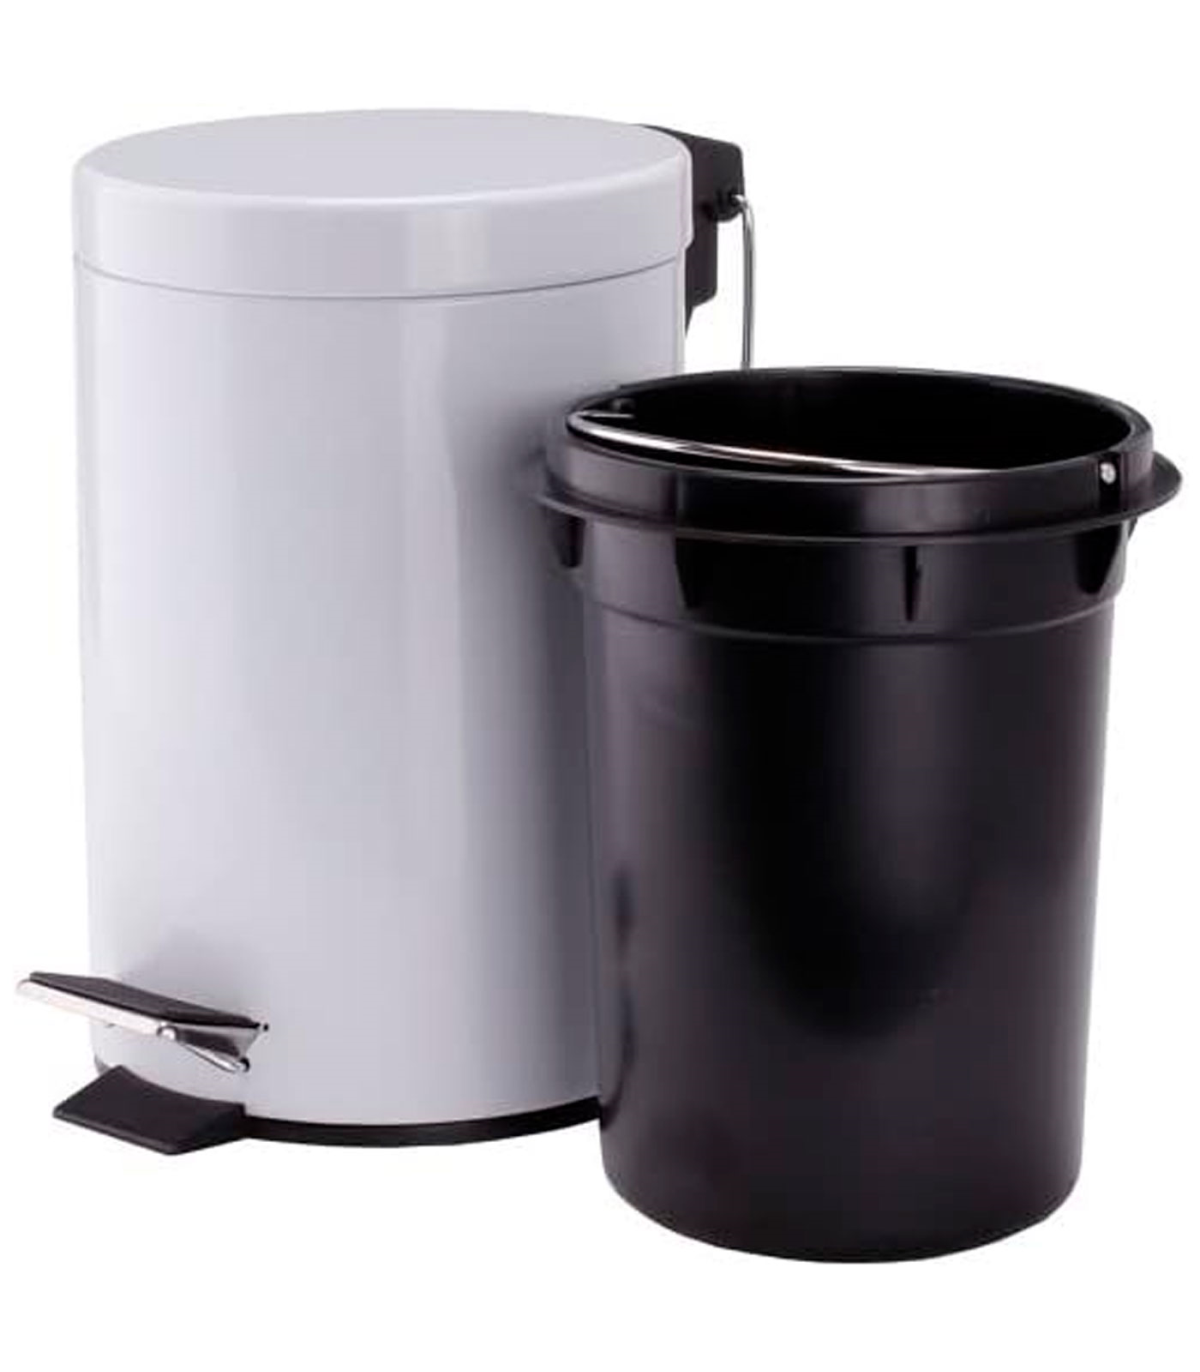 Cubo basura metálico con pedal, papelera cilíndrica de metal para baño,  cocina, aseo u oficina (20 litros, 35,5 x 31,5 x 40 cm)